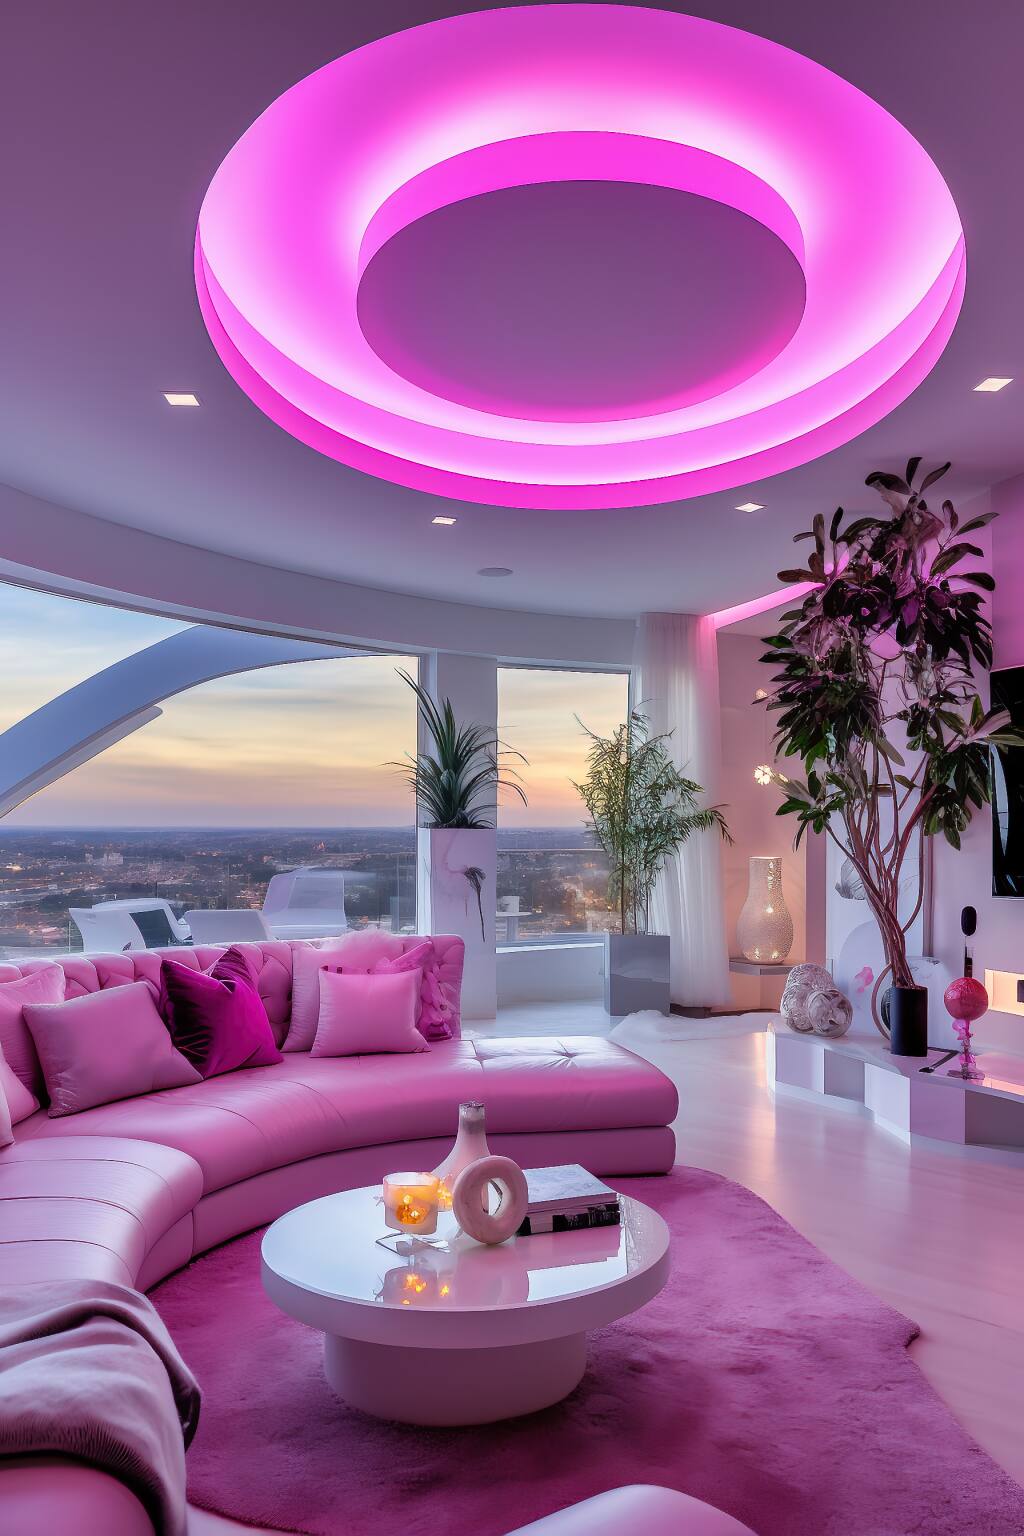 Ein Modernes Wohnzimmer Mit Fuchsiafarbener Beleuchtung, Rosafarbenen Sofas Und Einem Panoramablick Auf Die Stadt In Der Dämmerung Verkörpert Eine Romantische Urbane Atmosphäre.